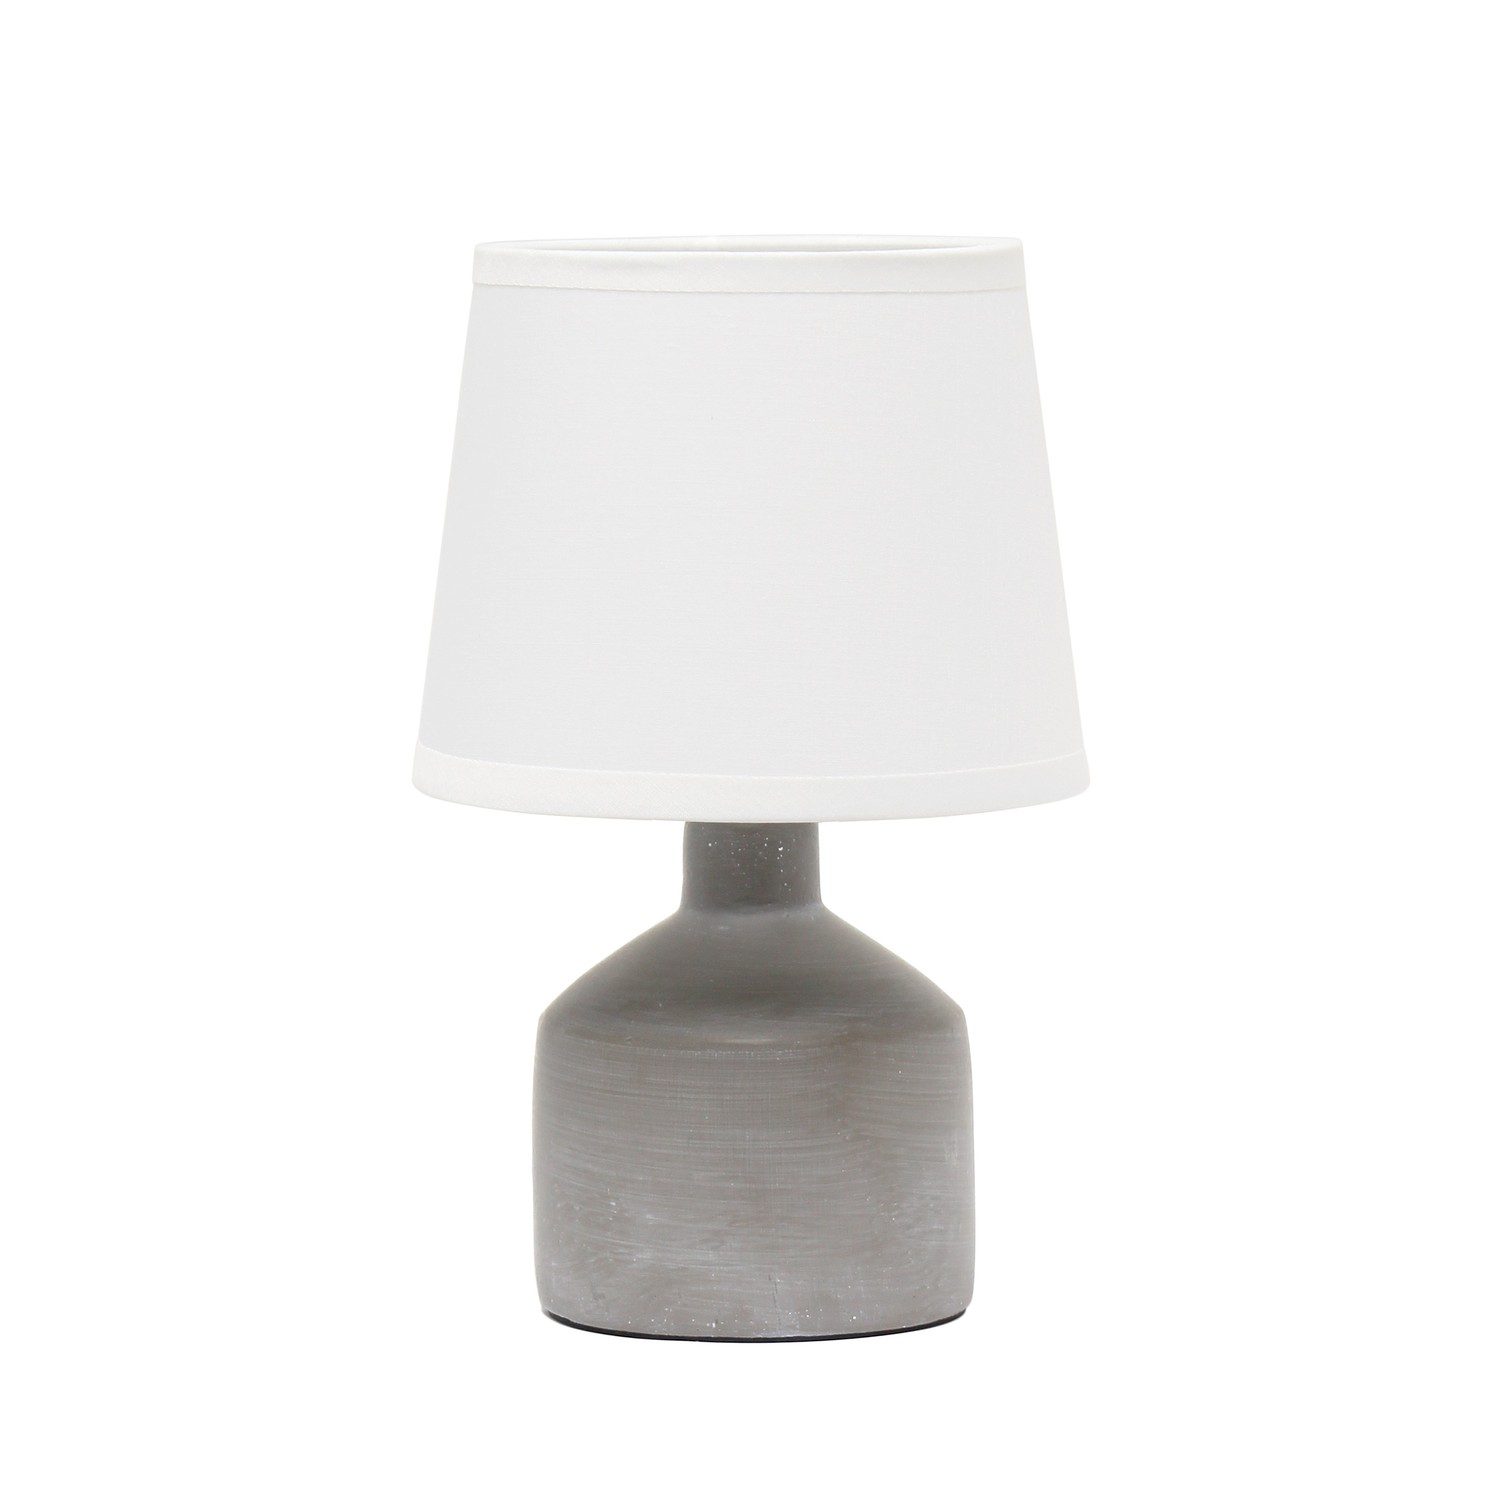 Simple Designs Mini Bocksbeutal Ceramic Table Lamp, Gray